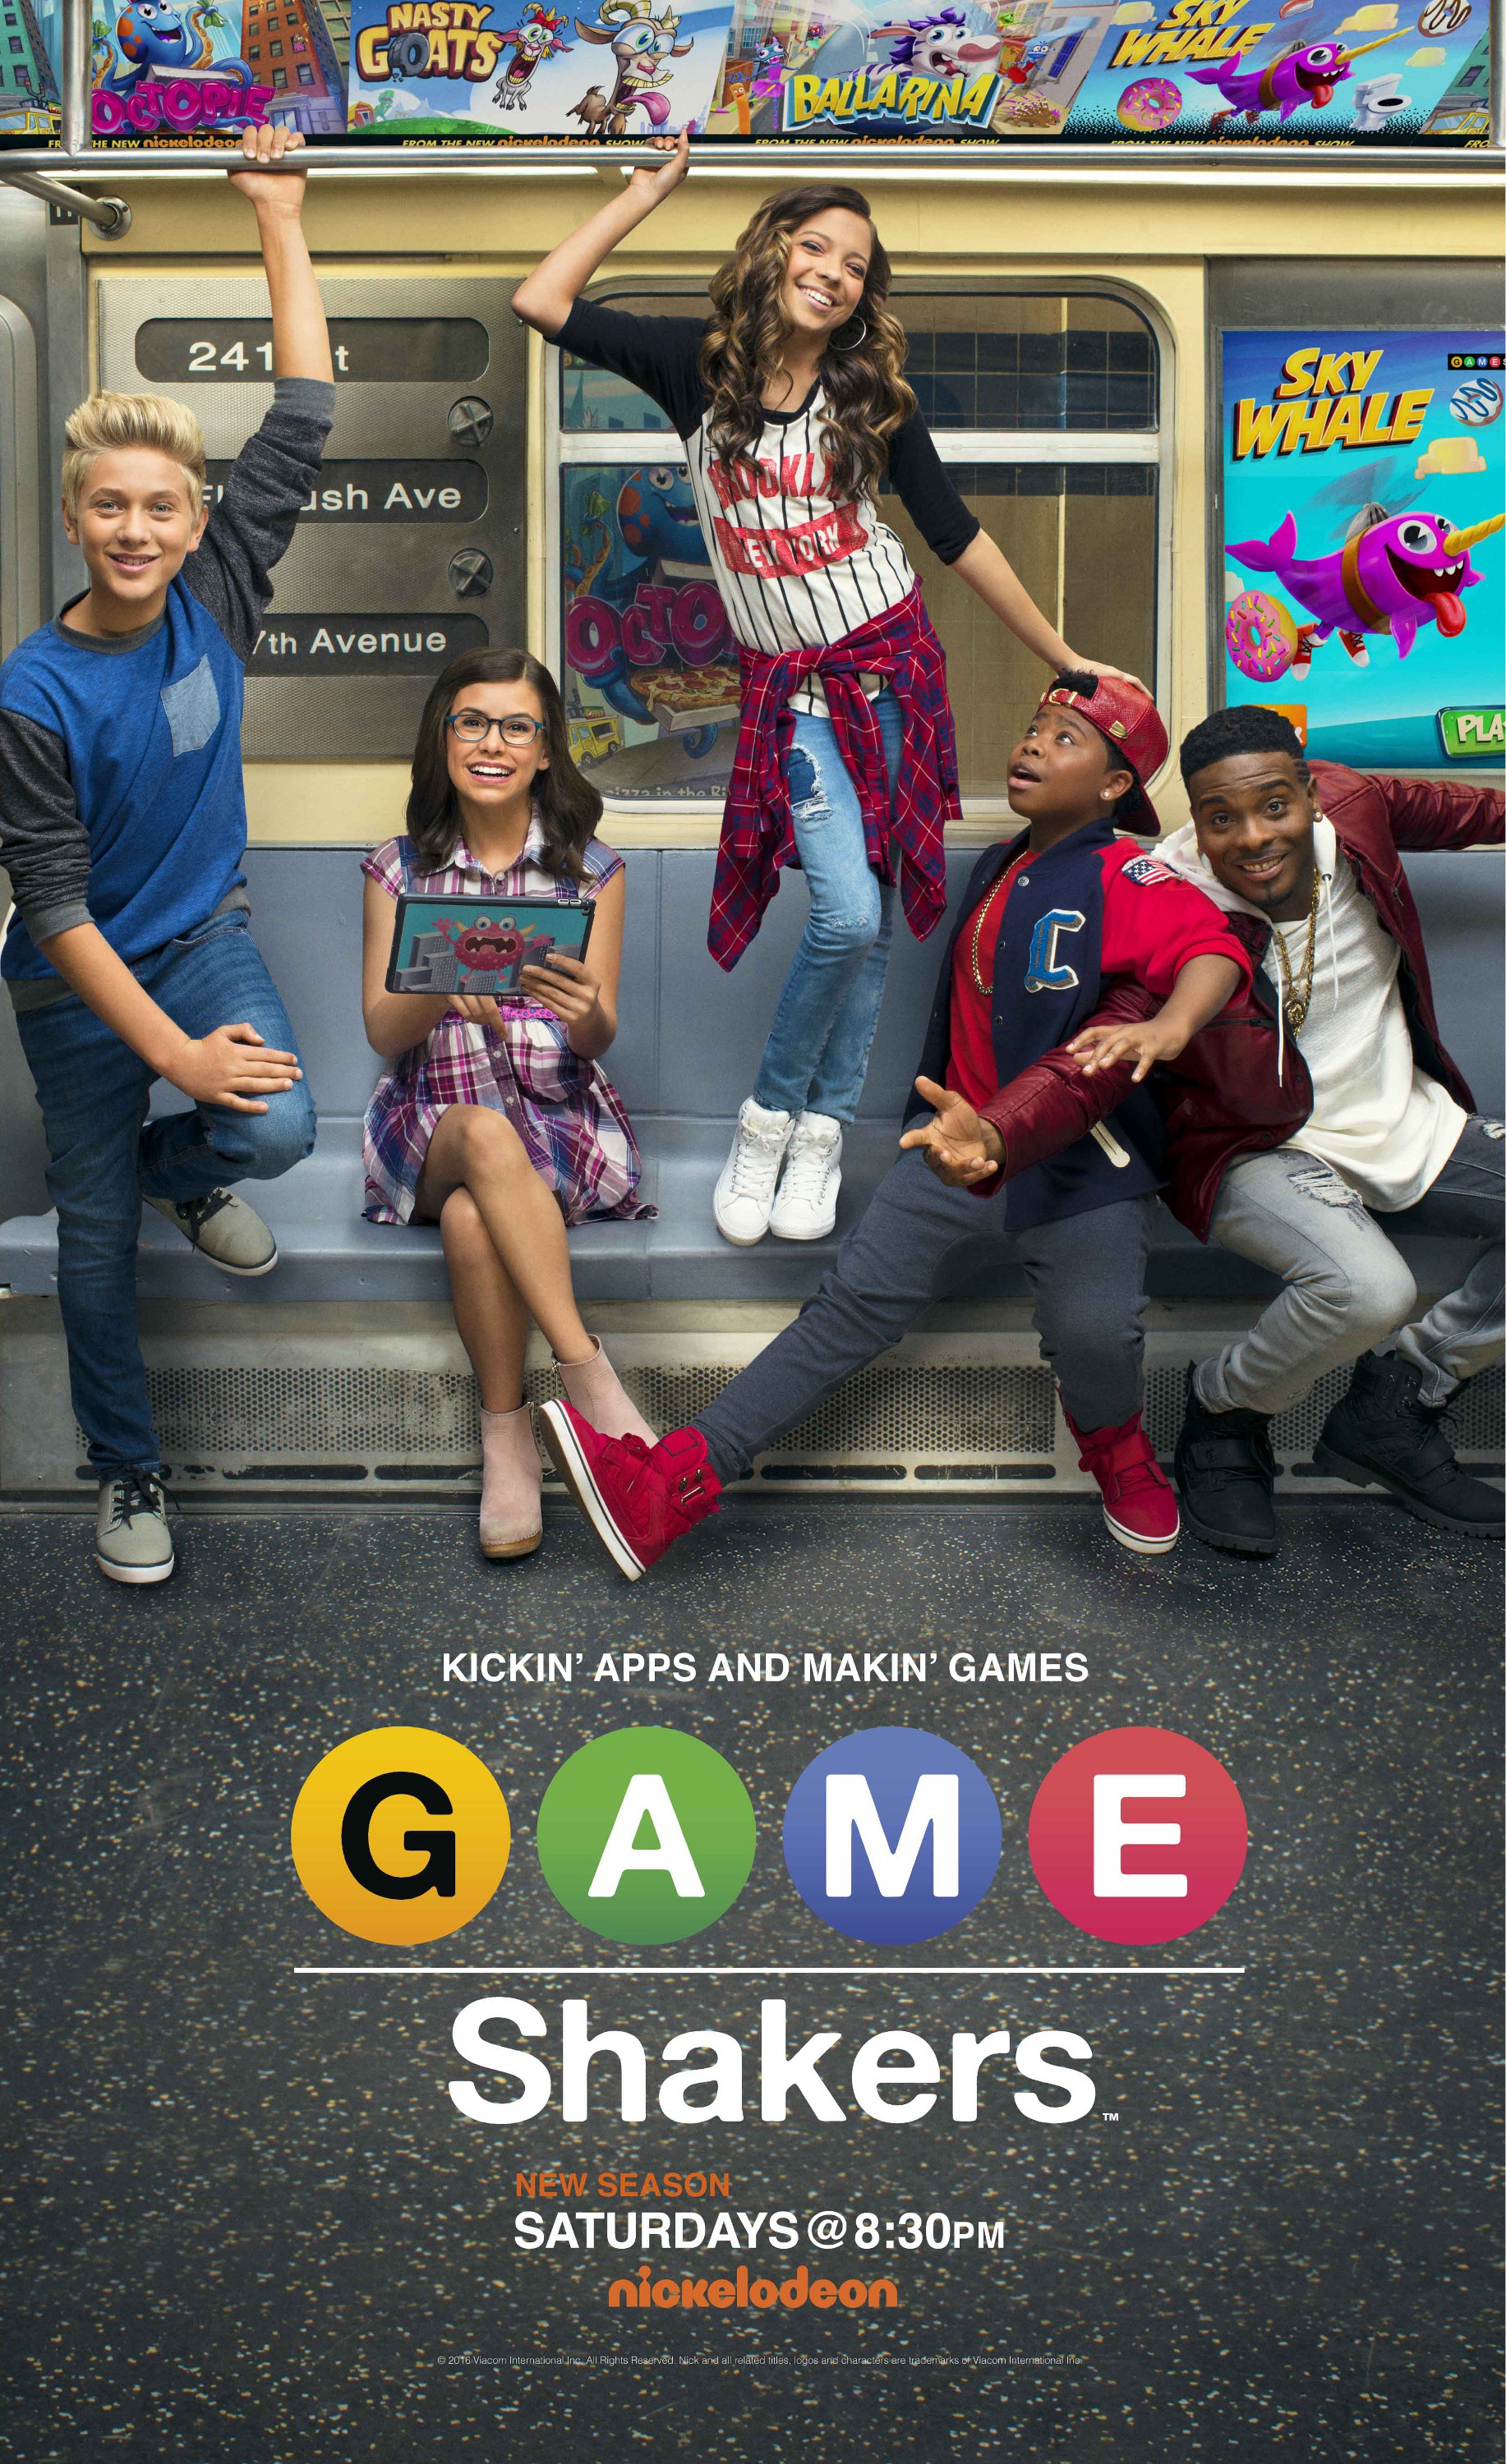 Game Shakers : Mega Sized Movie Poster Image - IMP Awards